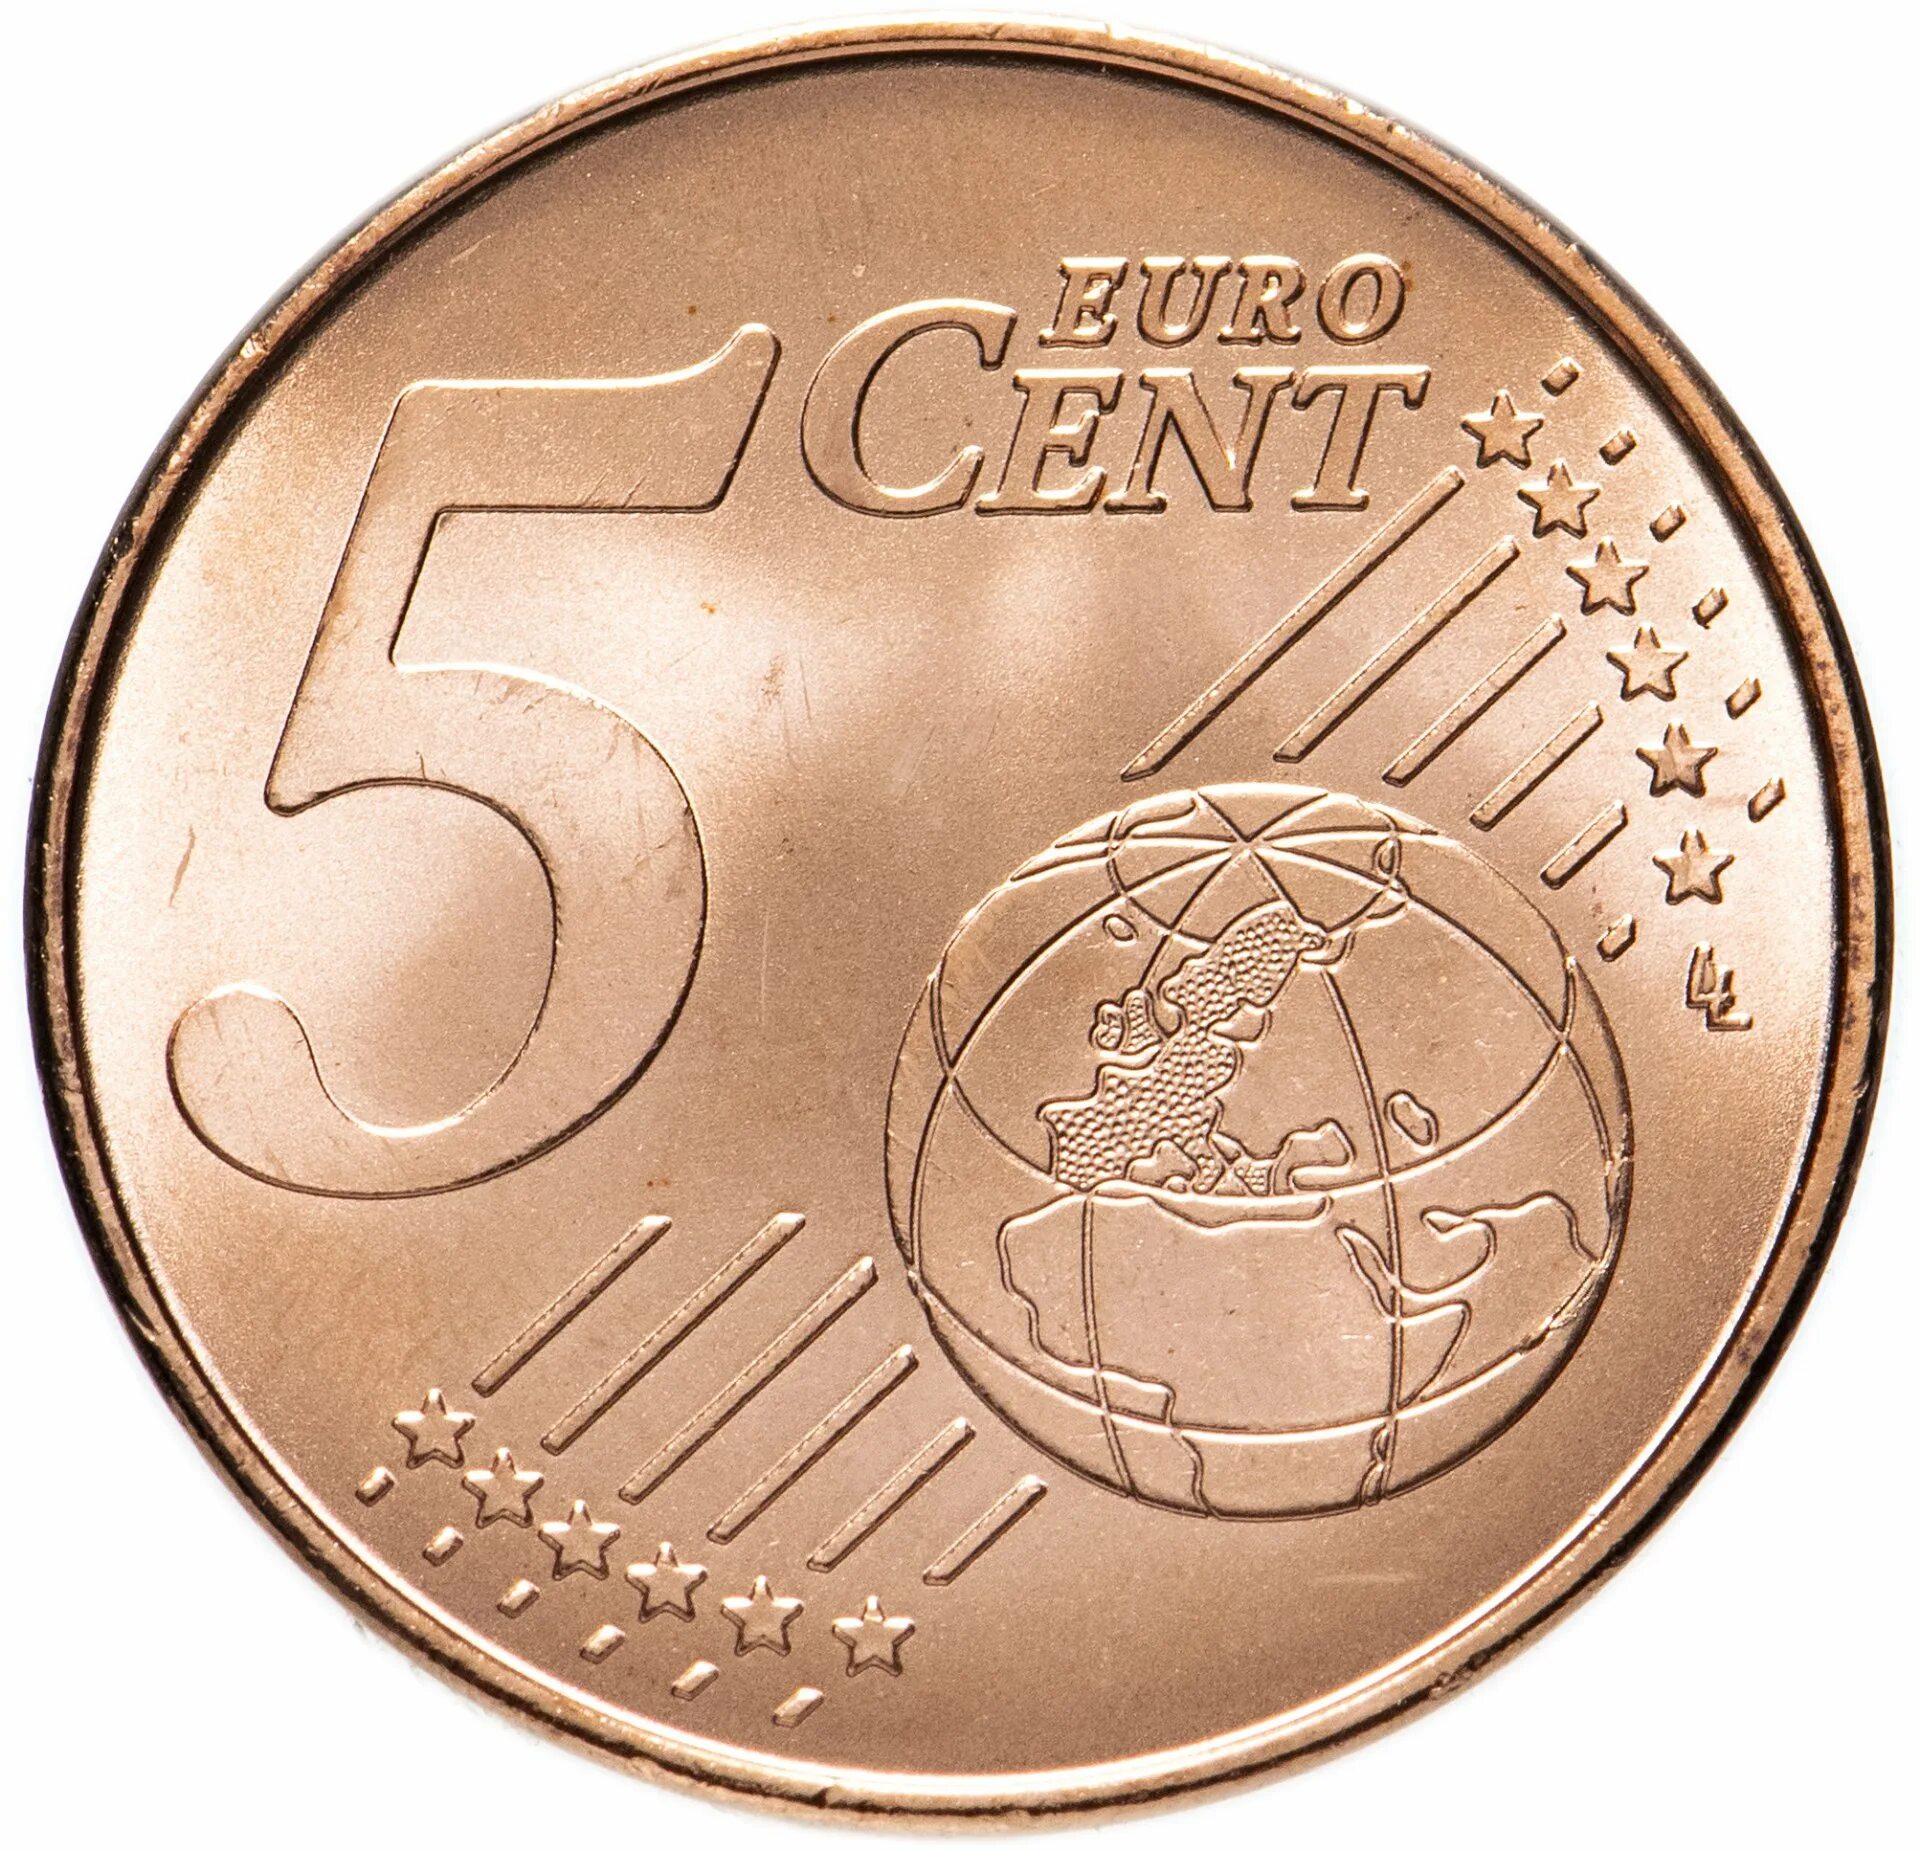 Монеты евро 5 Euro Cent. 5 Евроцентов 1999. 1 Euro Cent монета. 5 Евро центов Испания 1999. Пятерка монет